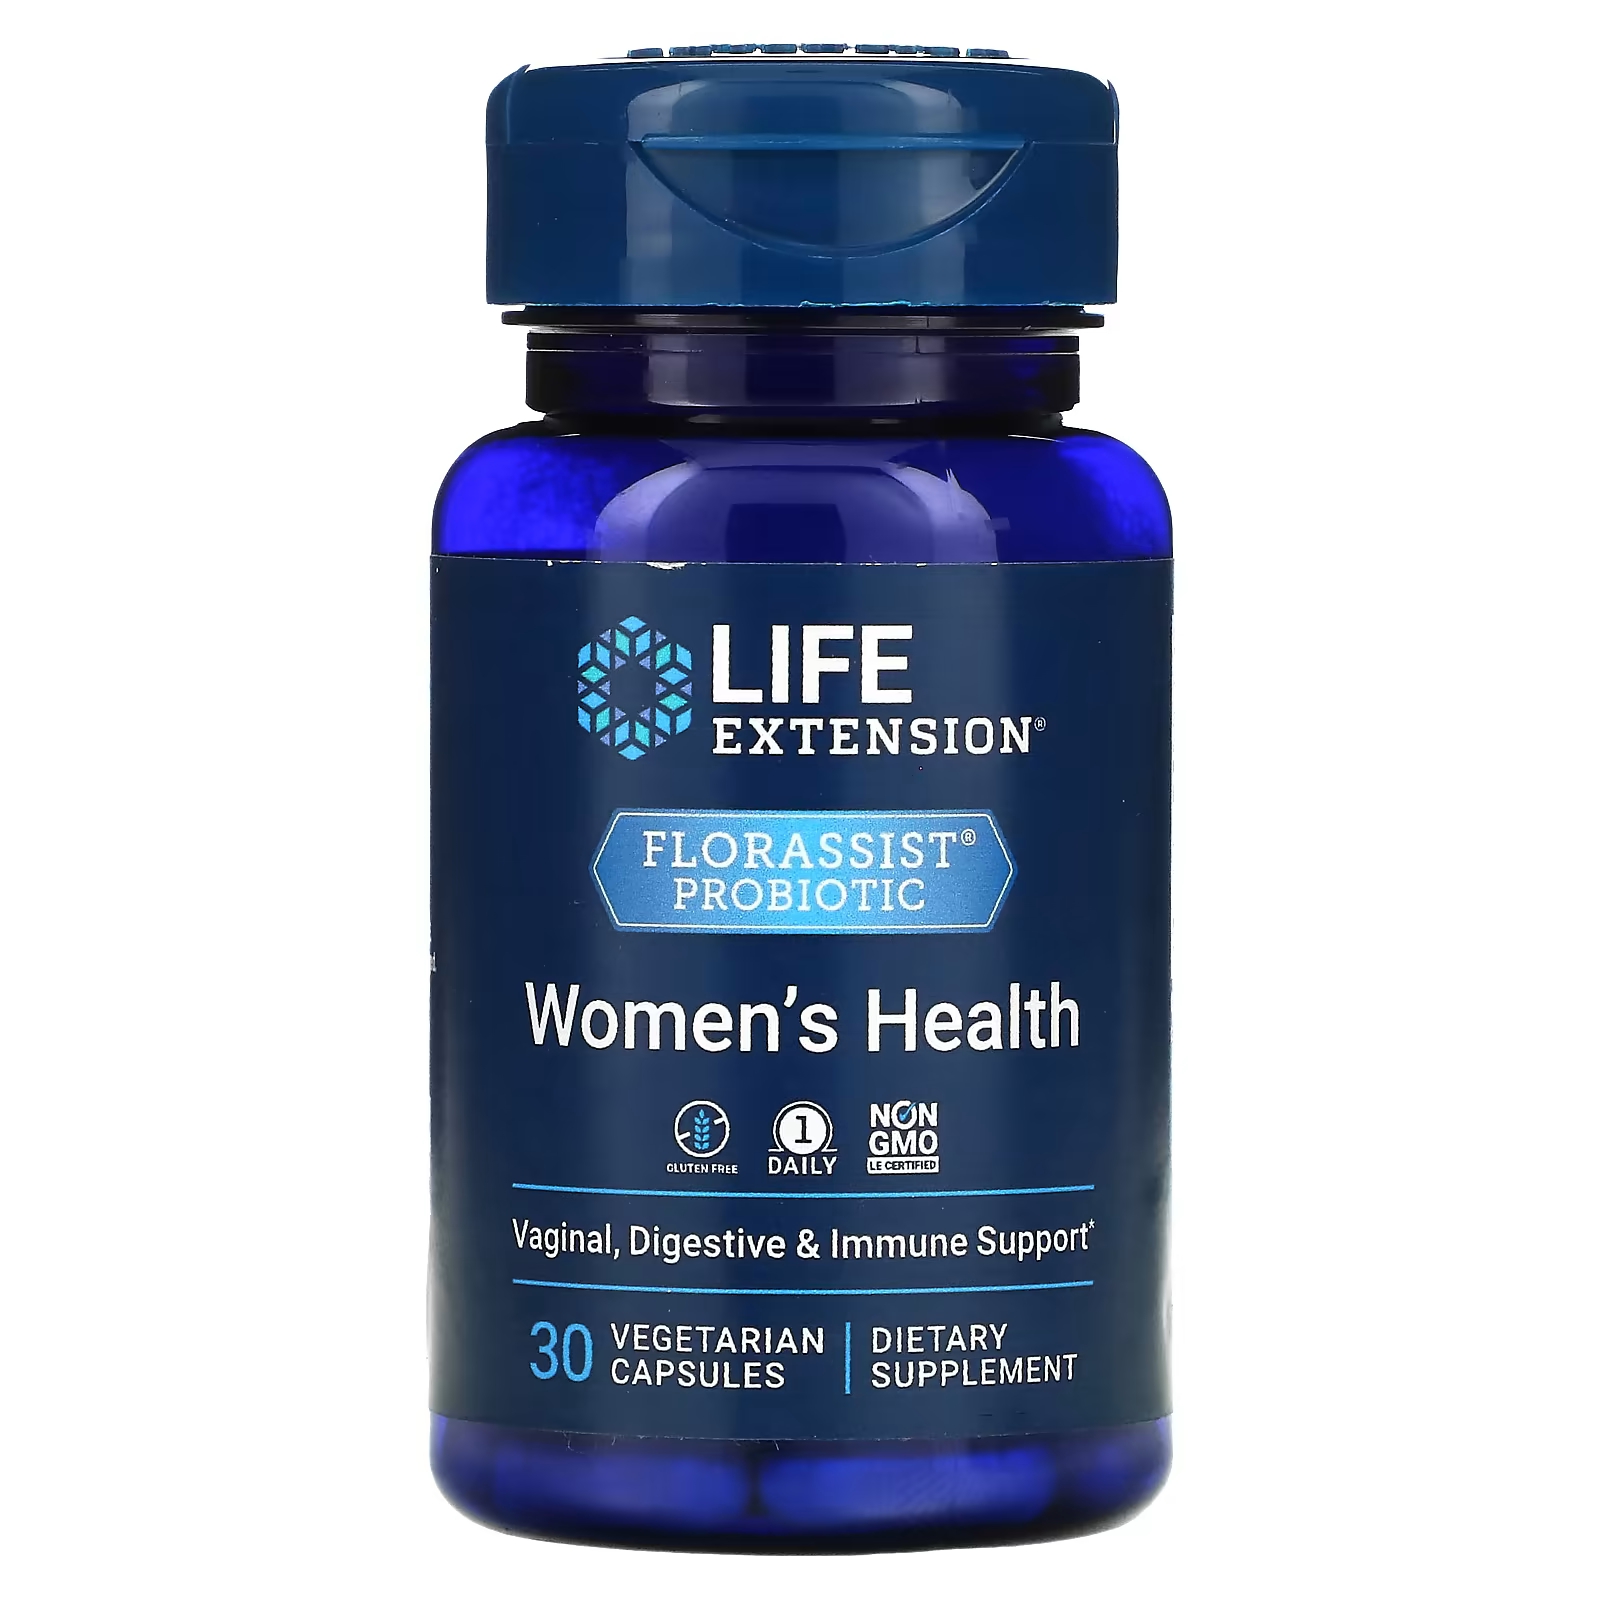 Пробиотик Life Extension Florassist для женского здоровья, 30 капсул добавка для здоровья печени florassist liver restore 60 капсул life extension